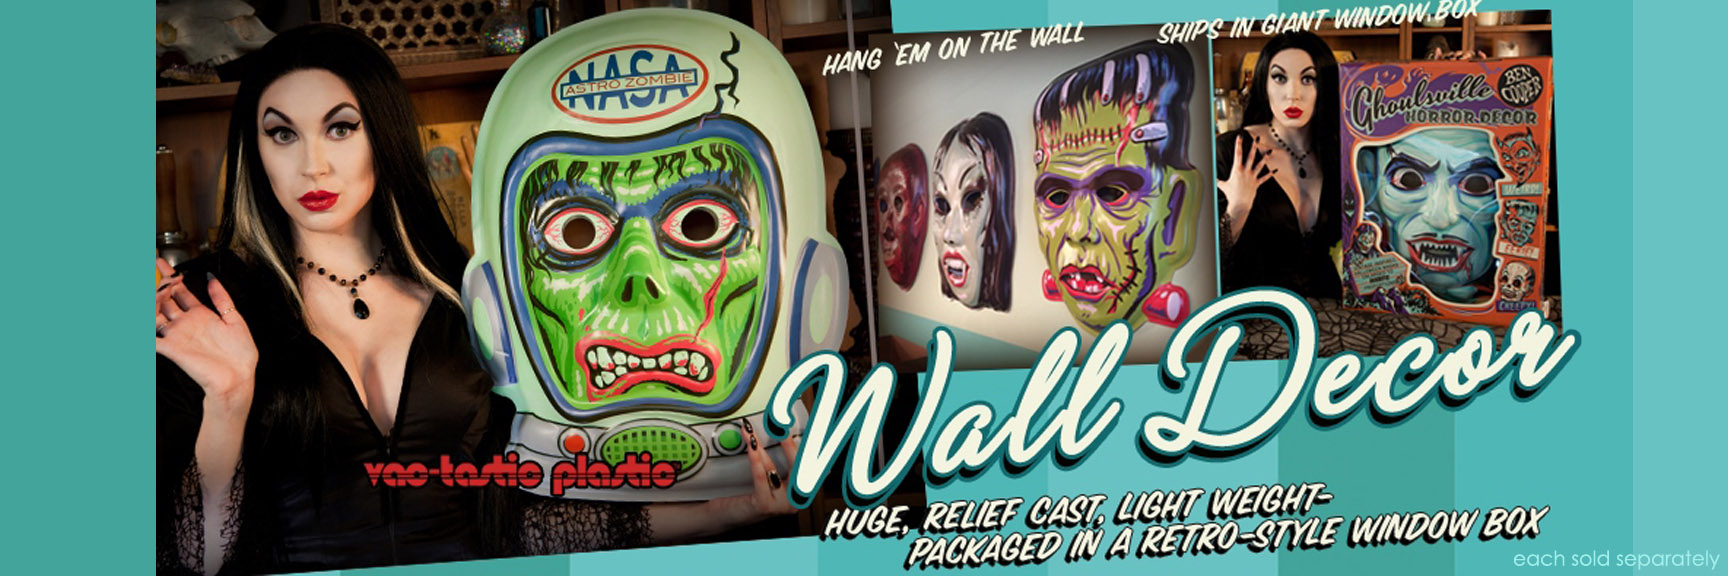 ben cooper mask vacuform wall decor